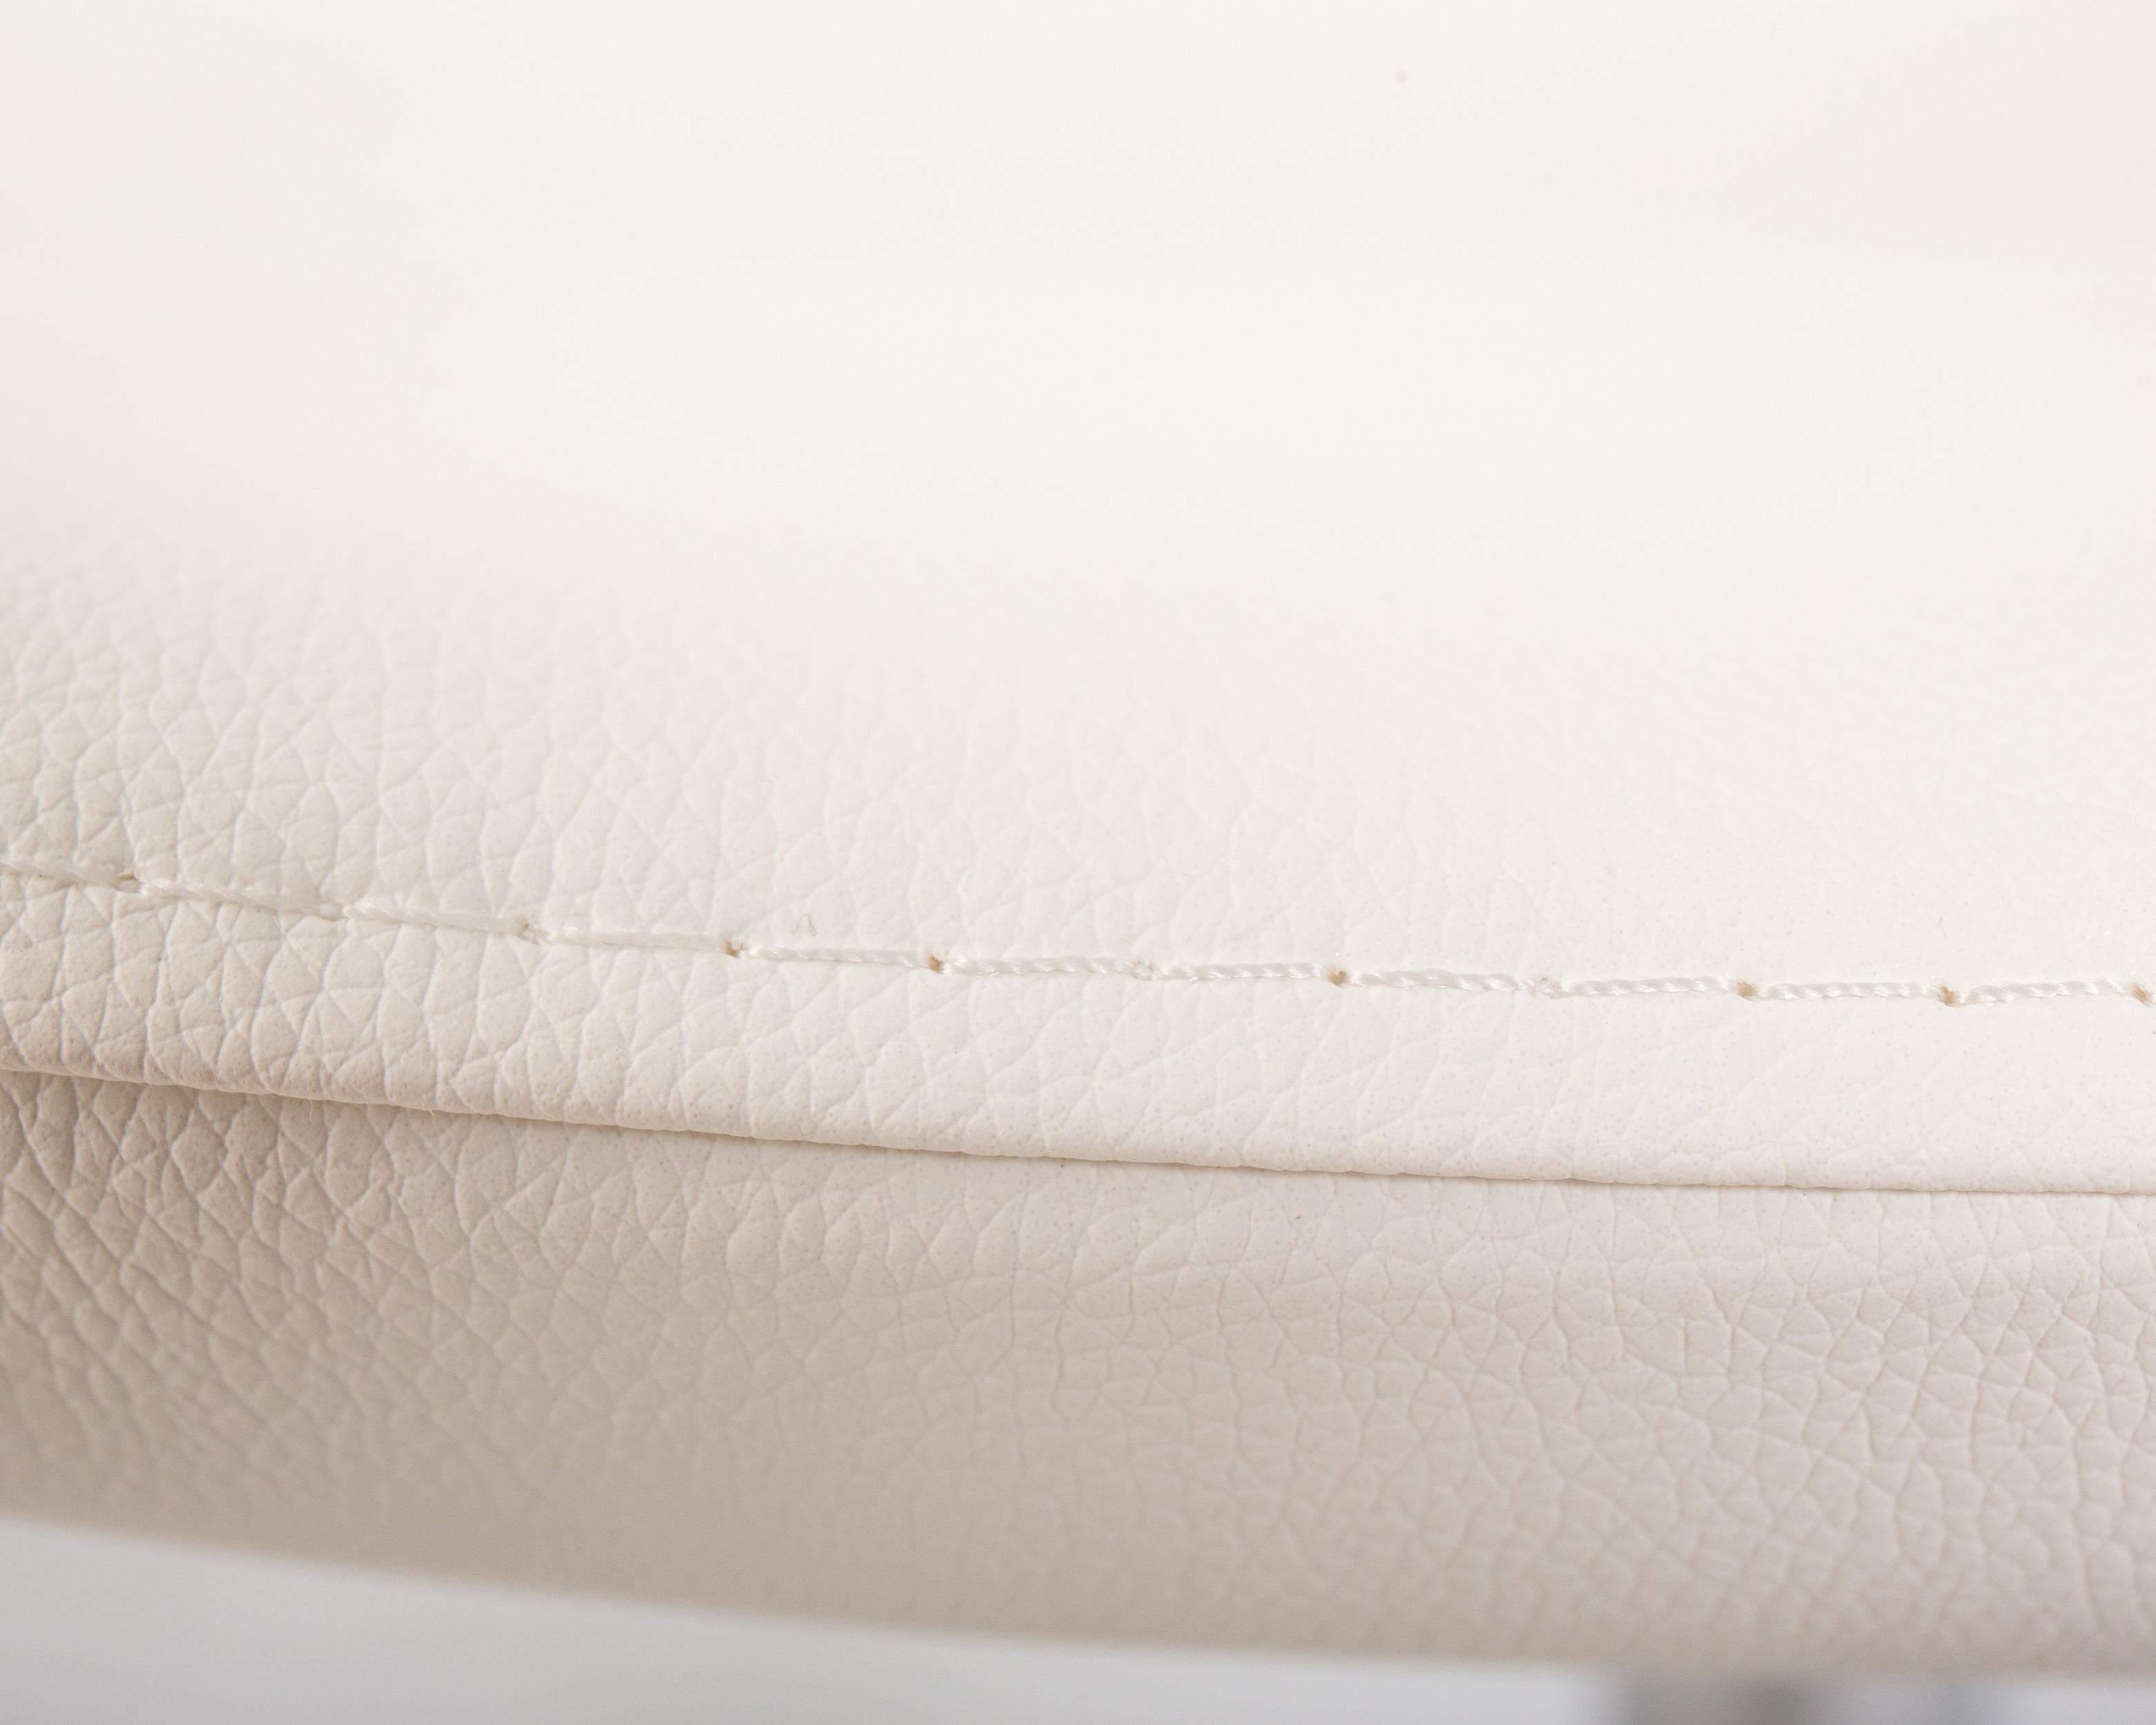 Кресло дизайнерское DOBRIN SWAN белый кожзам P23, алюминиевое основание